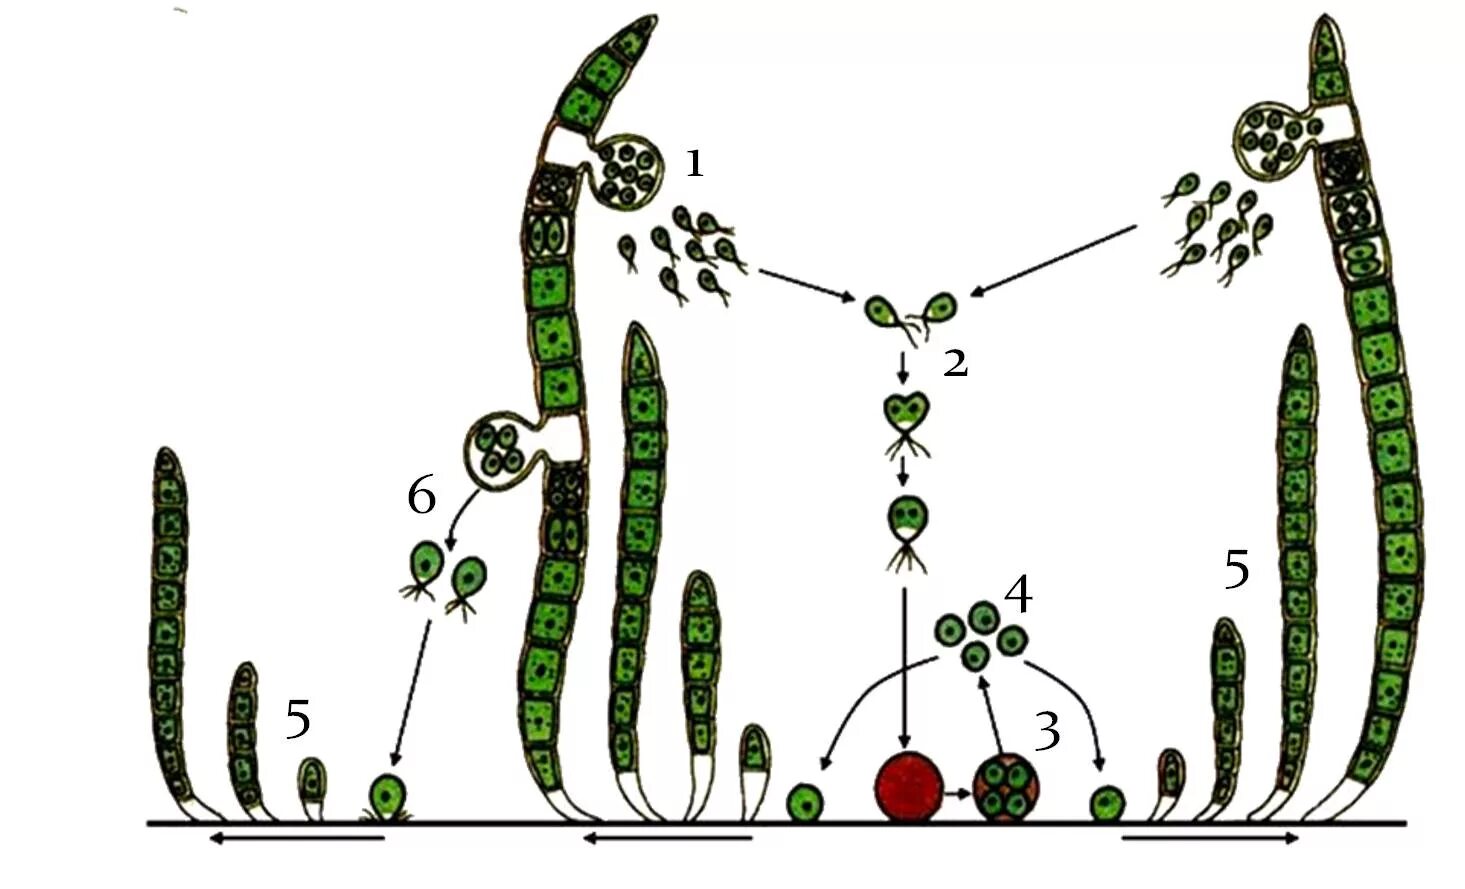 Способ размножение водоросль улотрикс. Улотрикс цикл размножения. Размножение водорослей схема улотрикс. Улотрикс бесполое размножение. Цикл развития улотрикса схема.